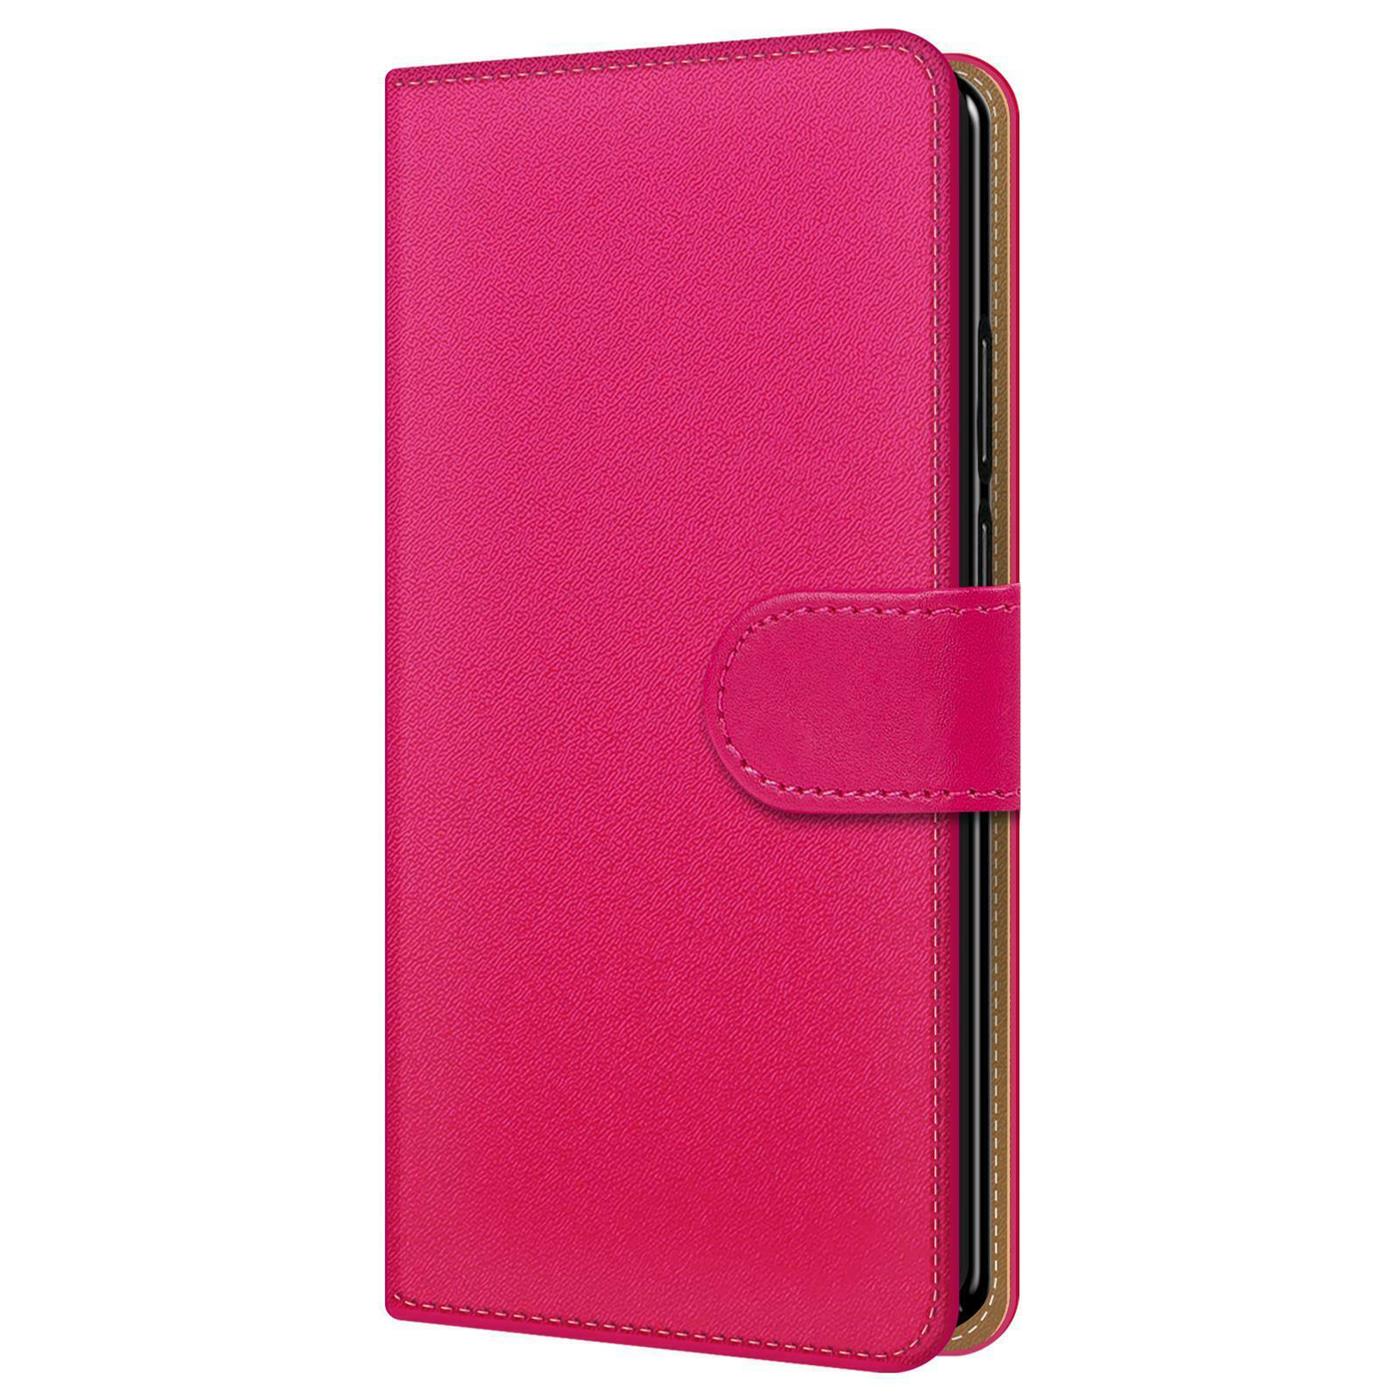 Handy Hülle für Huawei Modelle Case Schutz Tasche Cover Basic Wallet Flip Etui